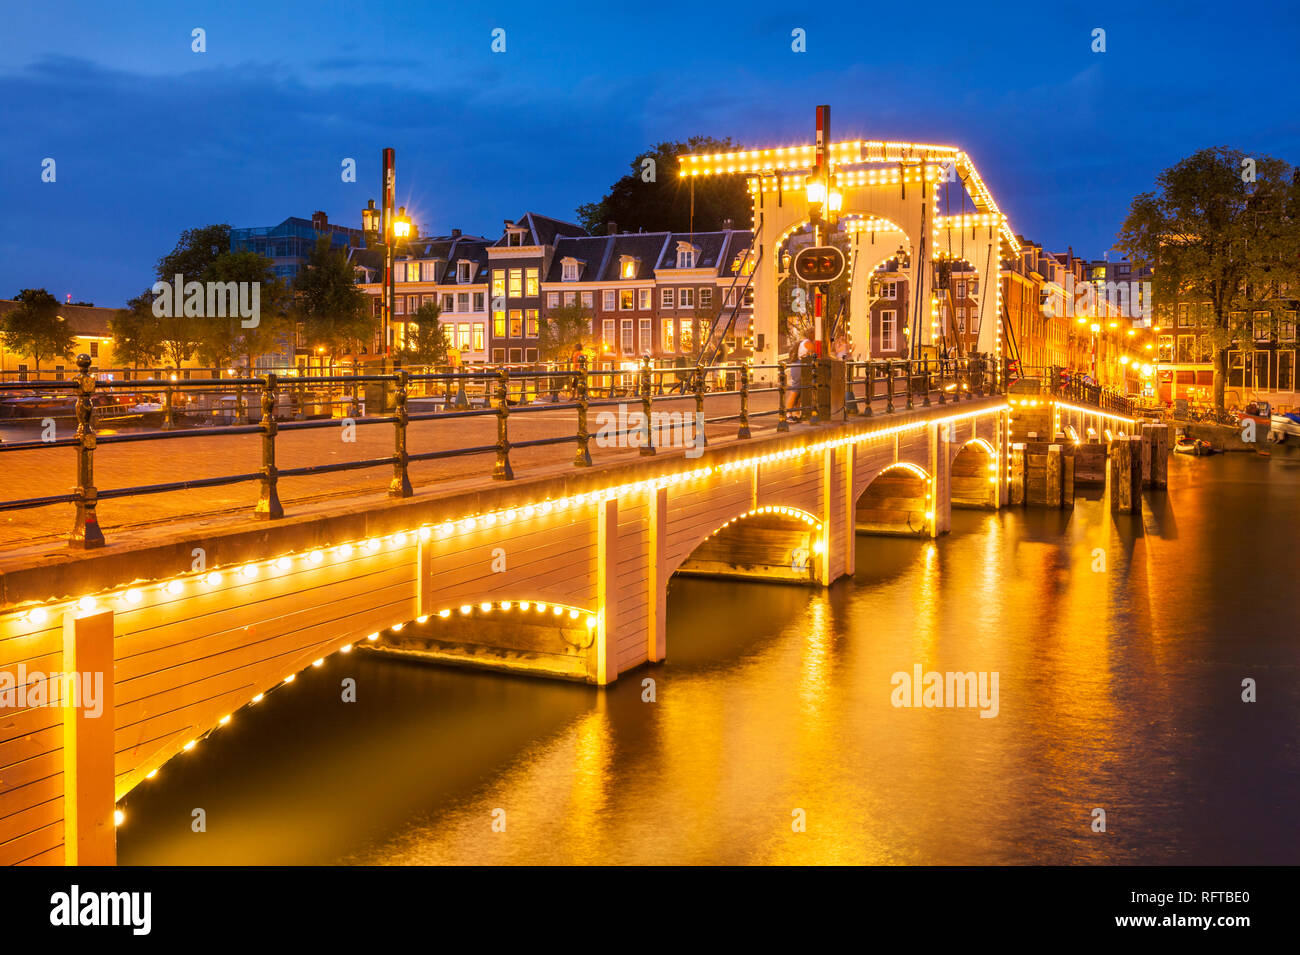 Illuminata Magere Brug (Skinny Bridge) di notte che attraversano il fiume Amstel di Amsterdam, Olanda Settentrionale, Paesi Bassi, Europa Foto Stock